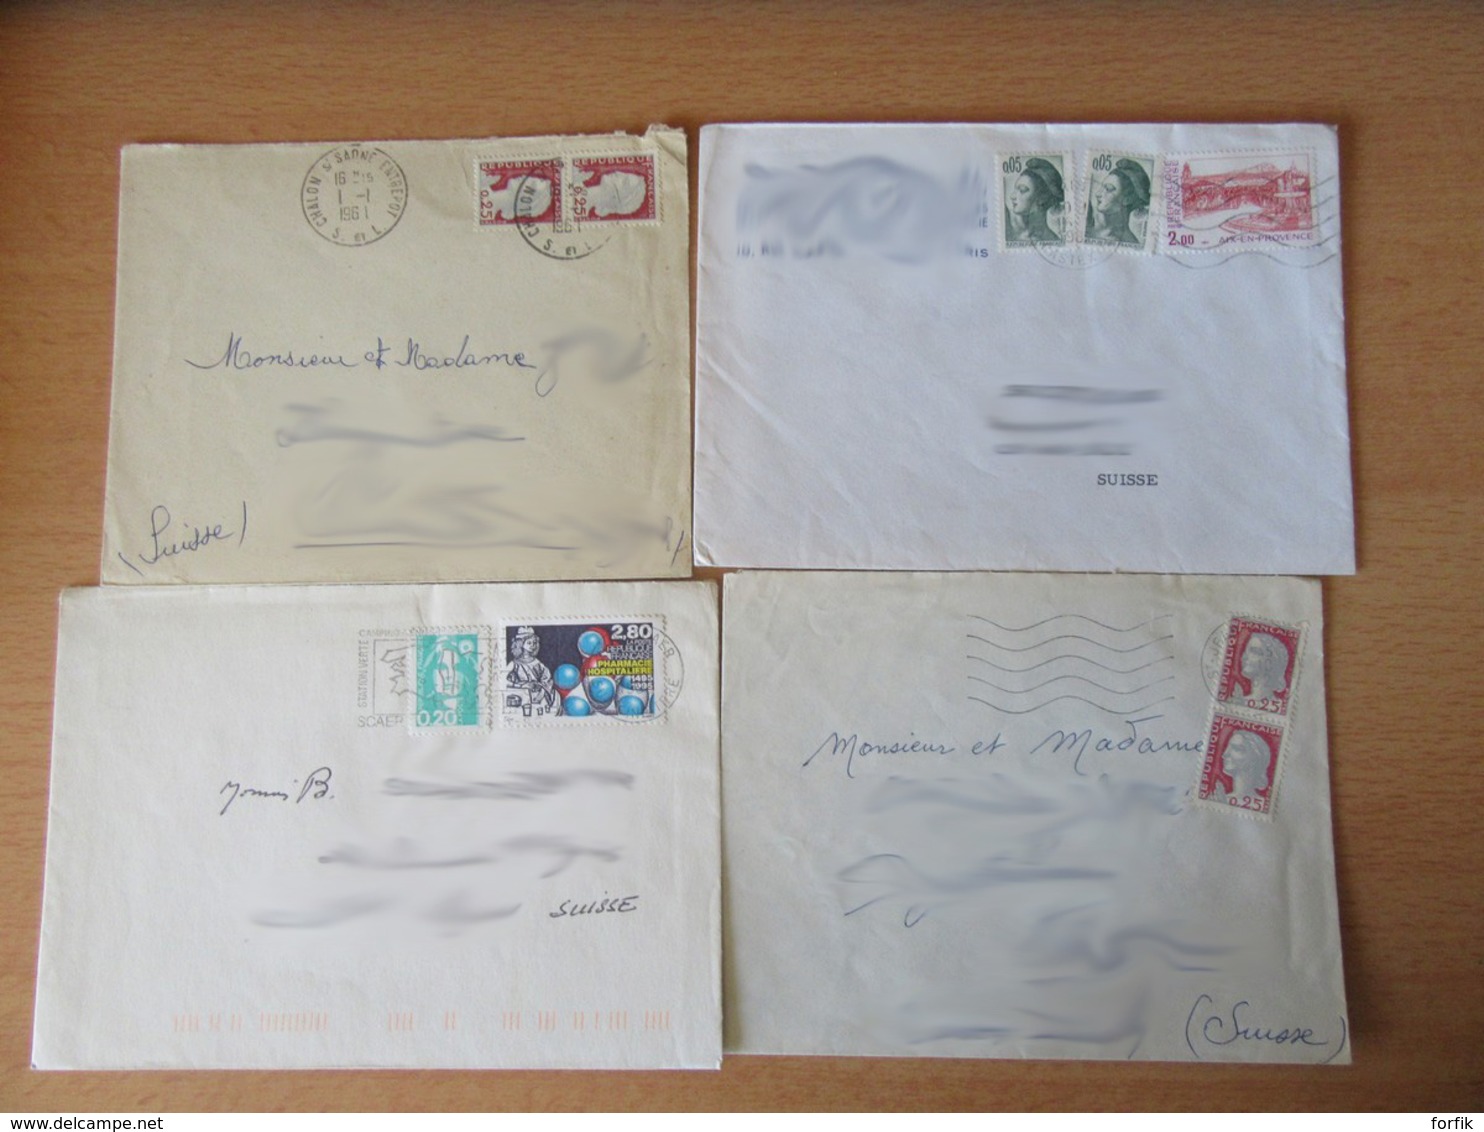 France vers Suisse - Lot de 44 Enveloppes timbrées modernes - Bons affranchissements et timbres variés